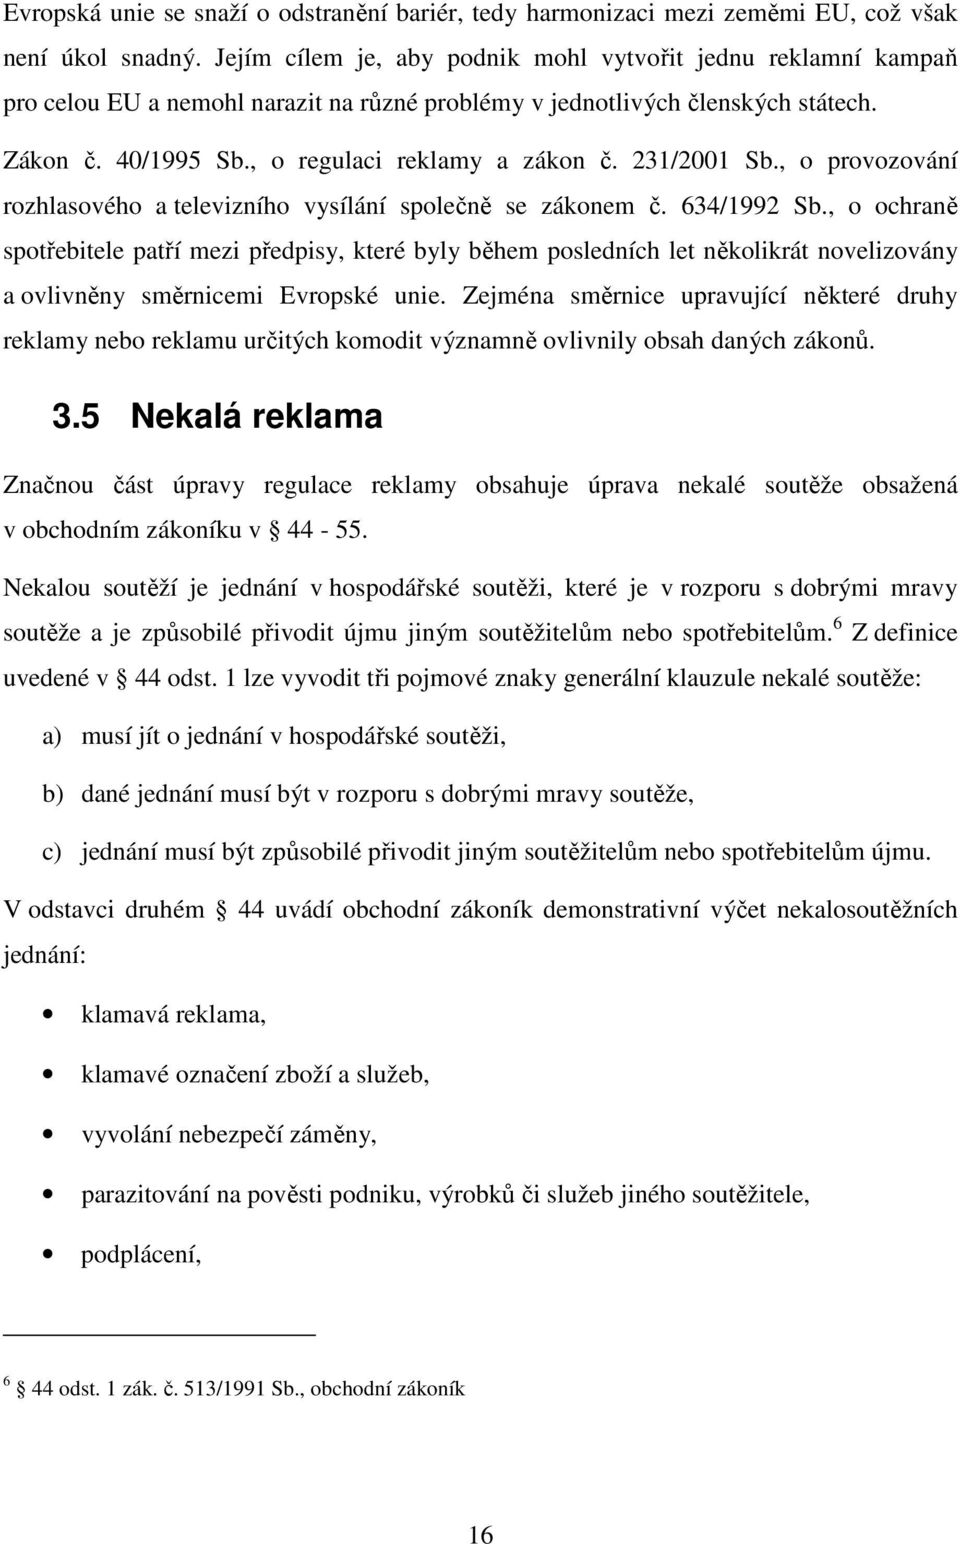 231/2001 Sb., o provozování rozhlasového a televizního vysílání společně se zákonem č. 634/1992 Sb.